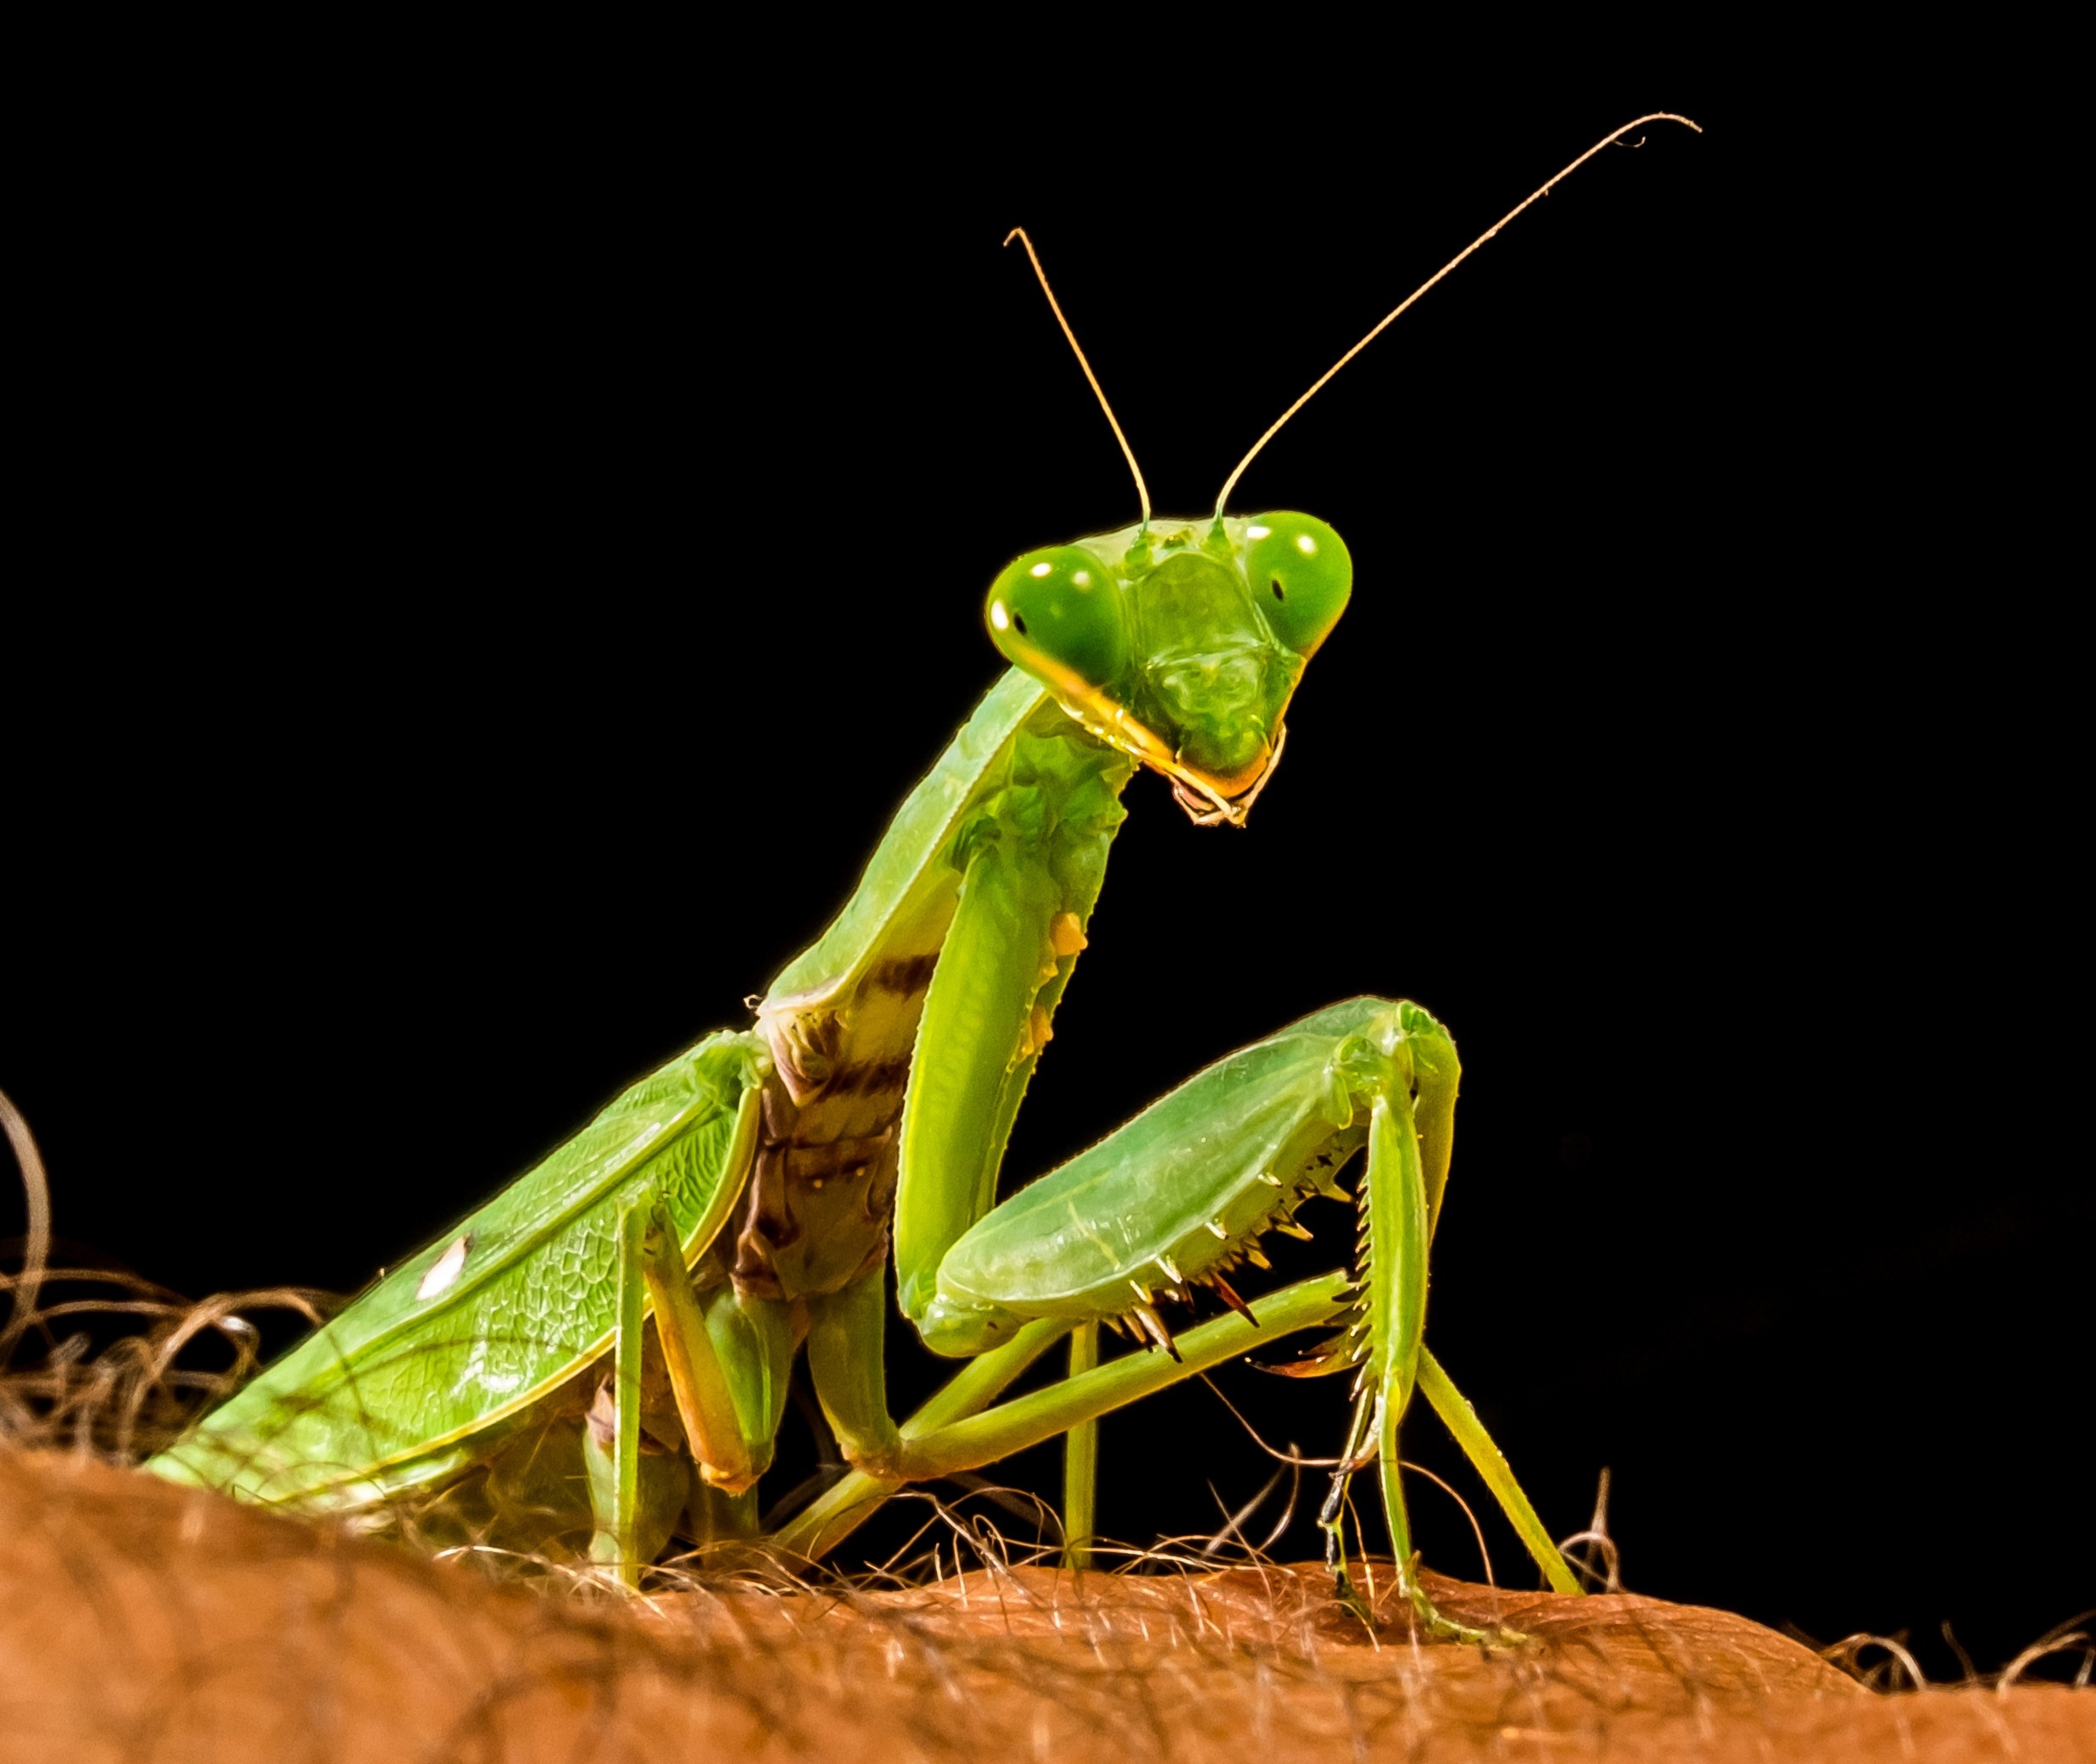 Fishing Locust, Praying Mantis, Green, one animal, animal themes